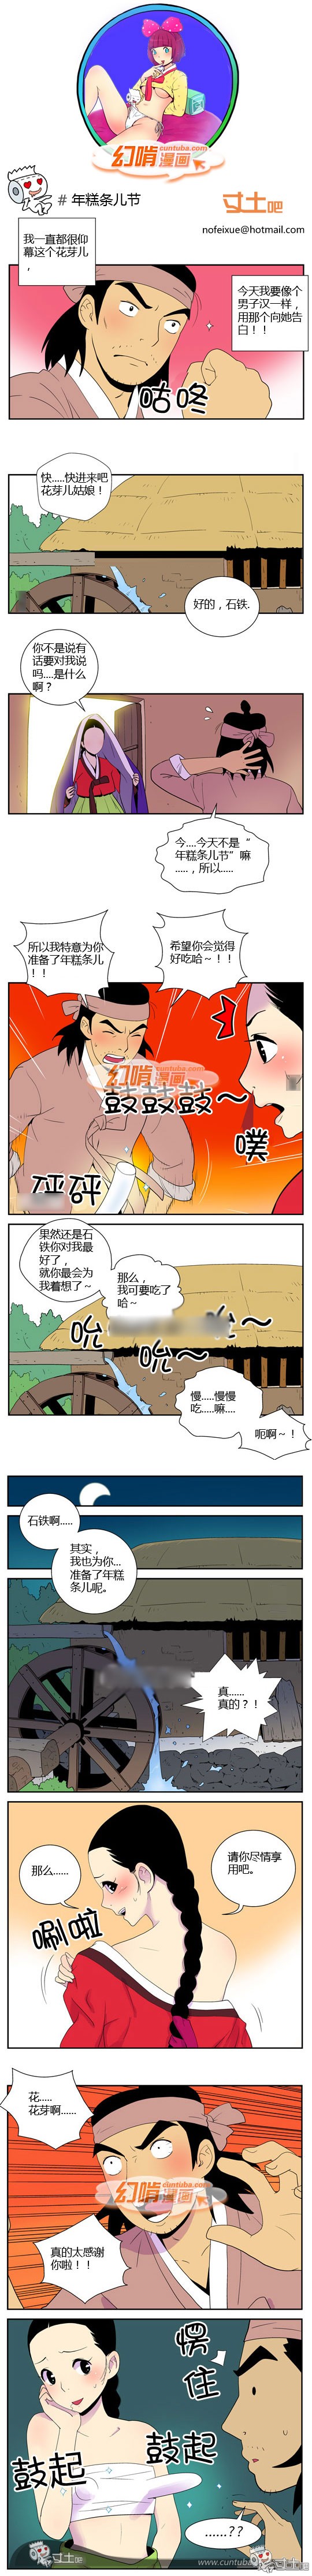 幻啃漫画年糕条儿节